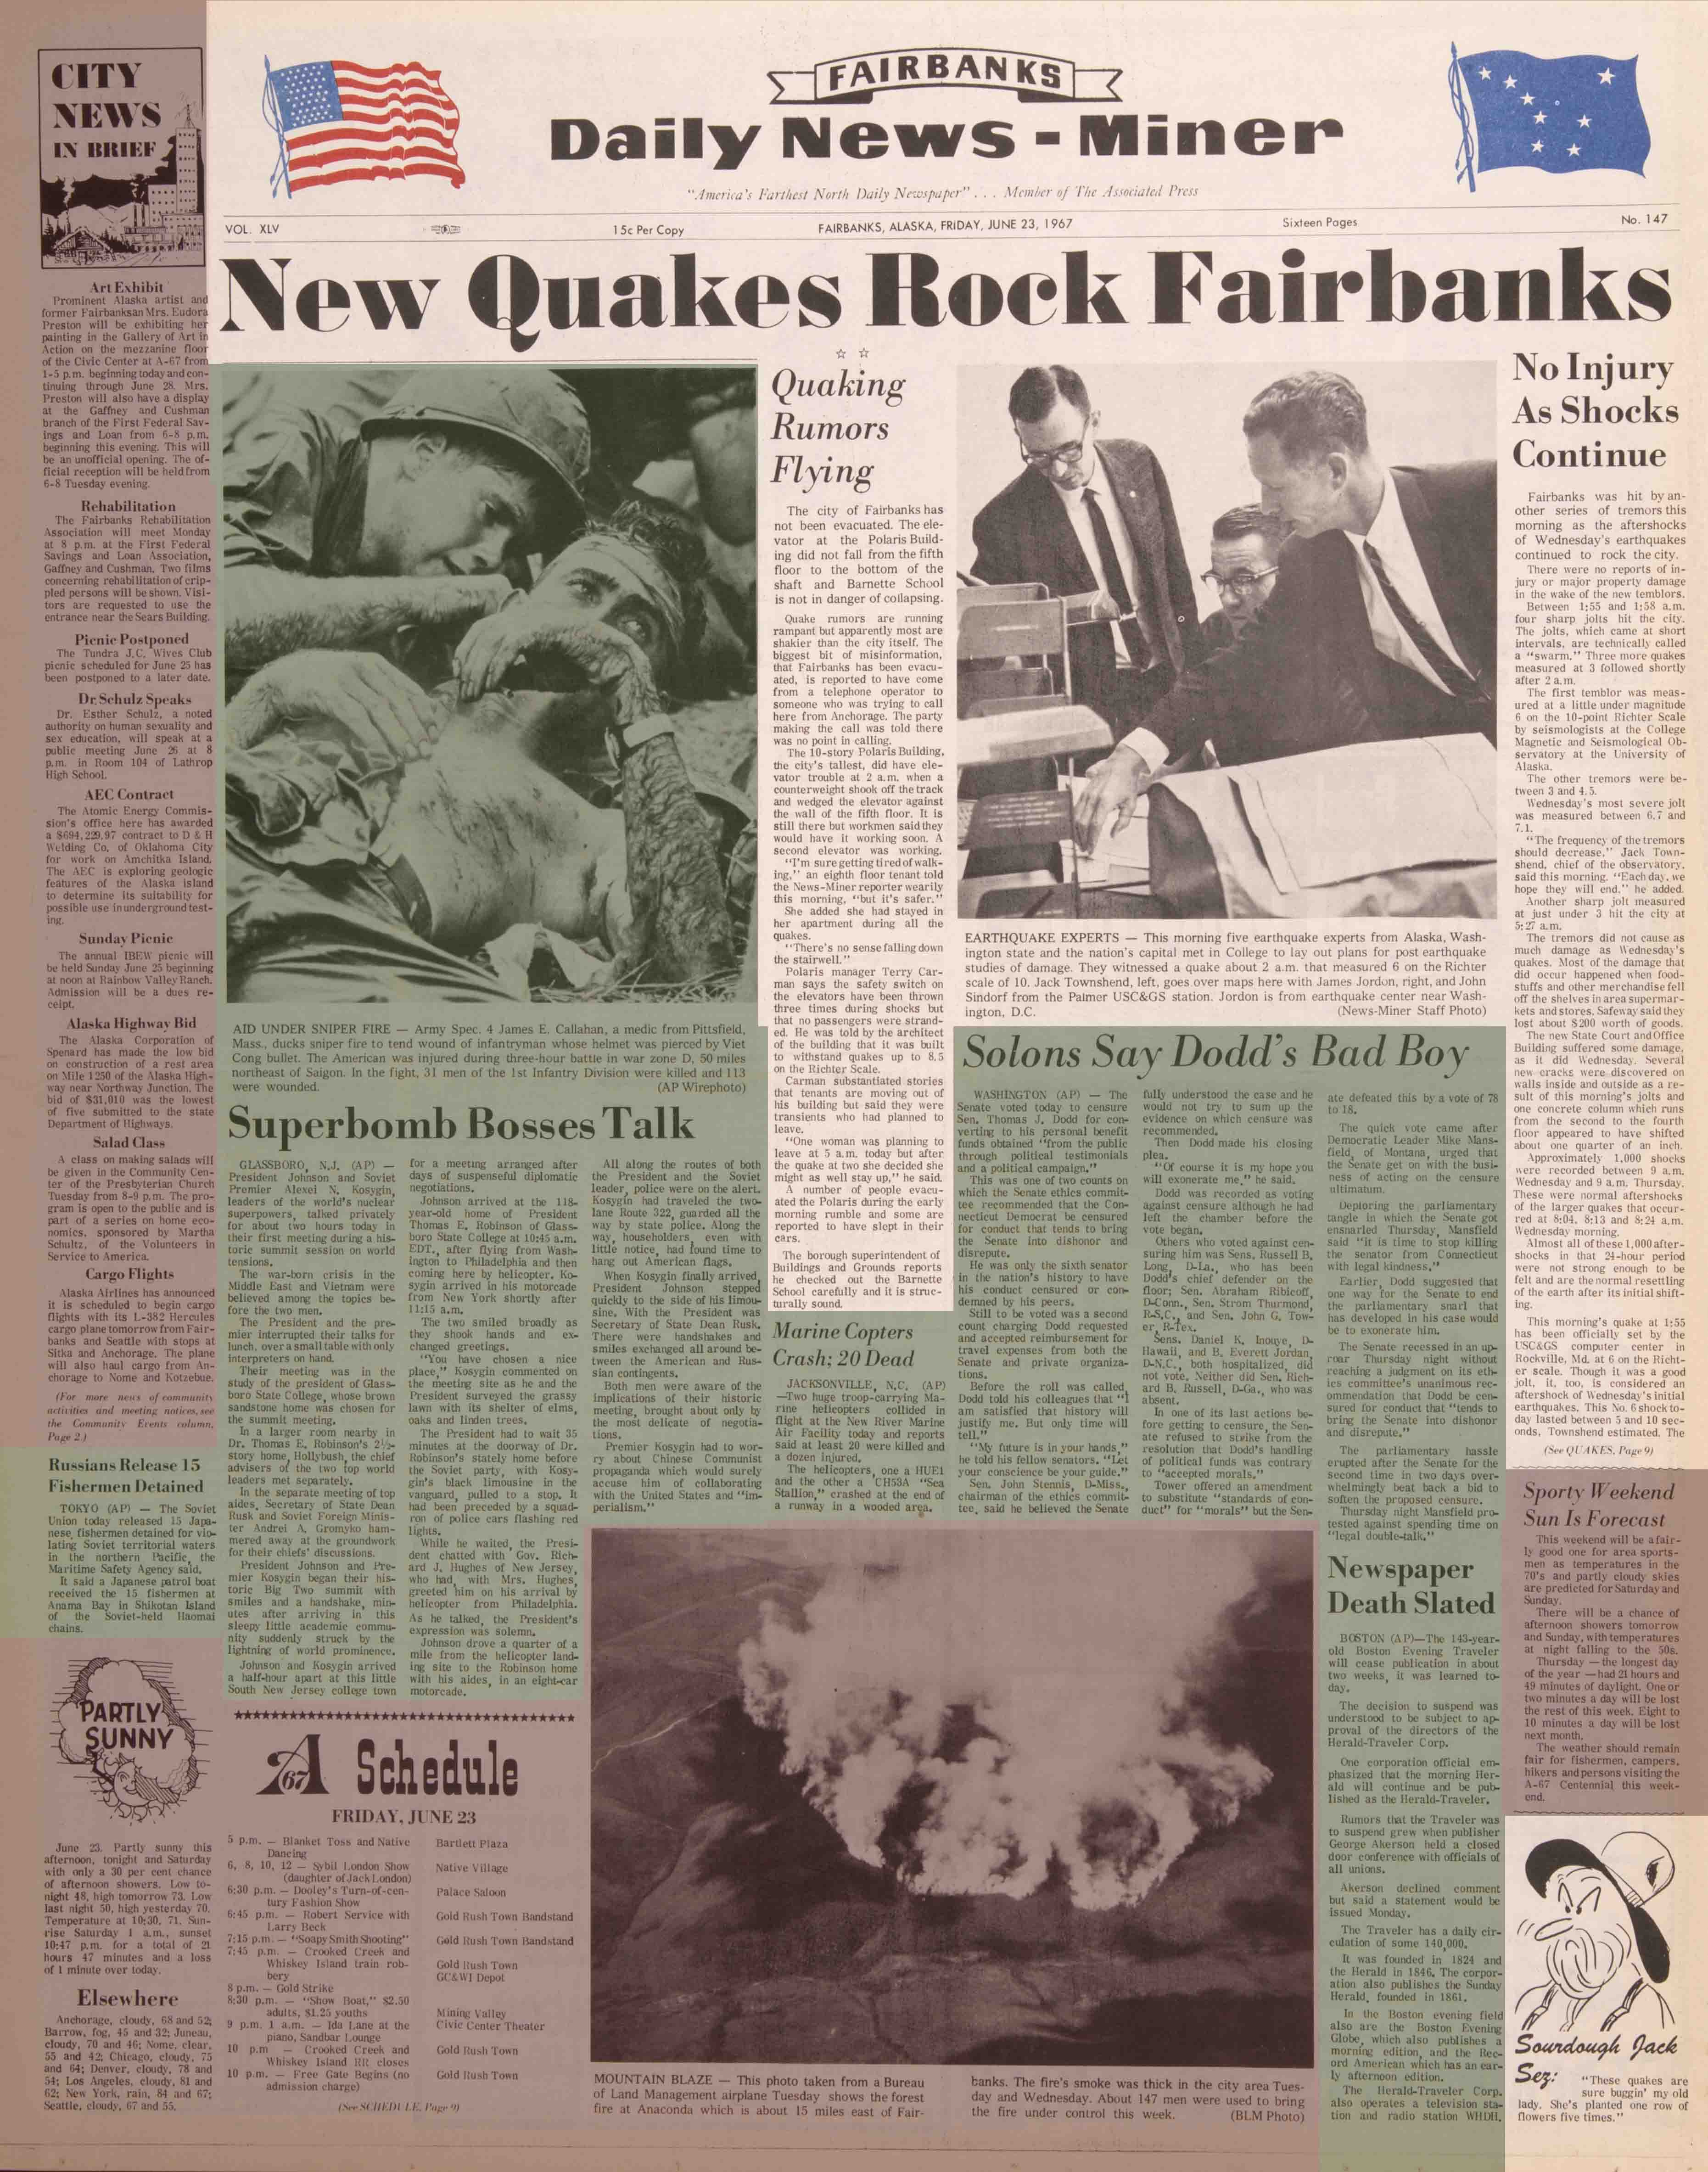 1967 June 23, Fairbanks Daily News-Miner (pg 1)